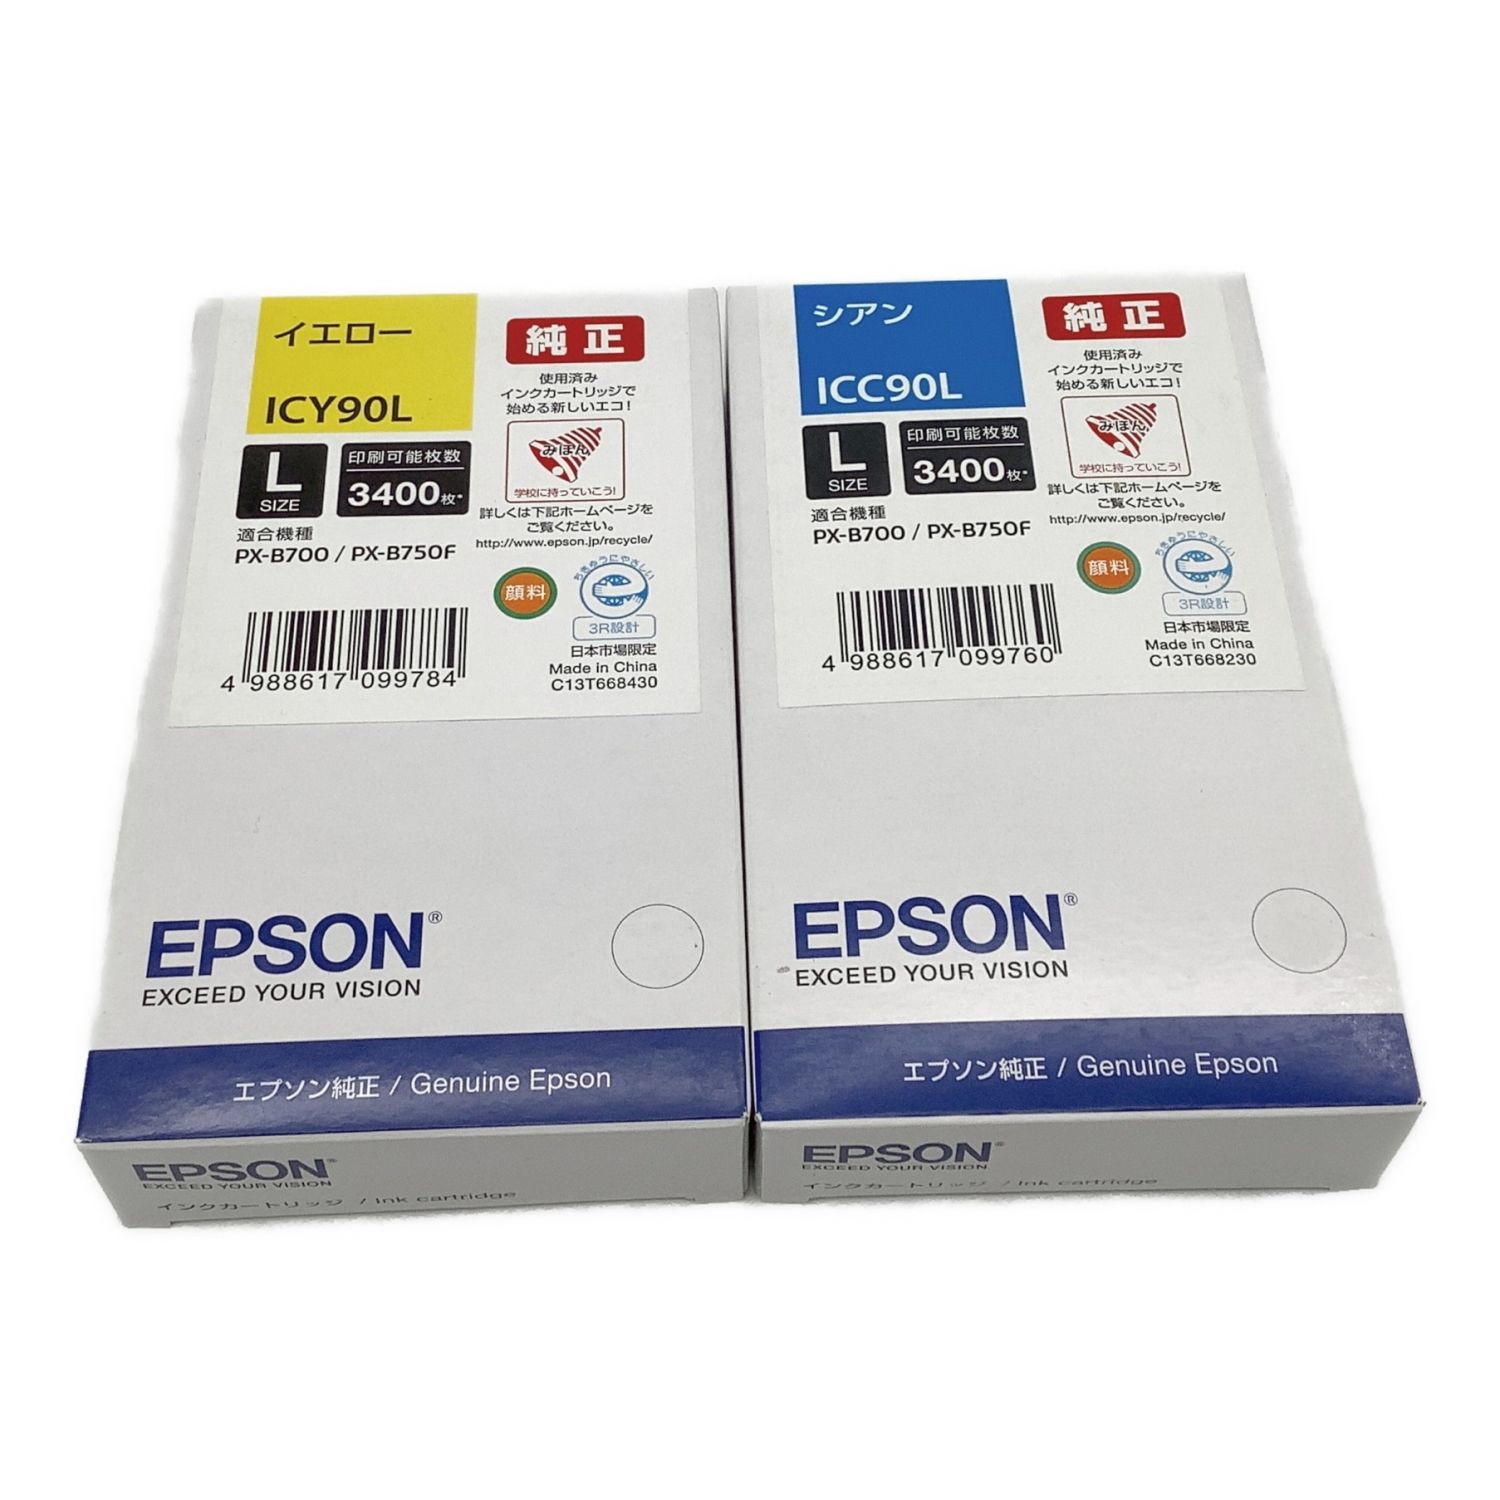 れとなる EPSON ベストワン - 通販 - PayPayモール インクカートリッジ